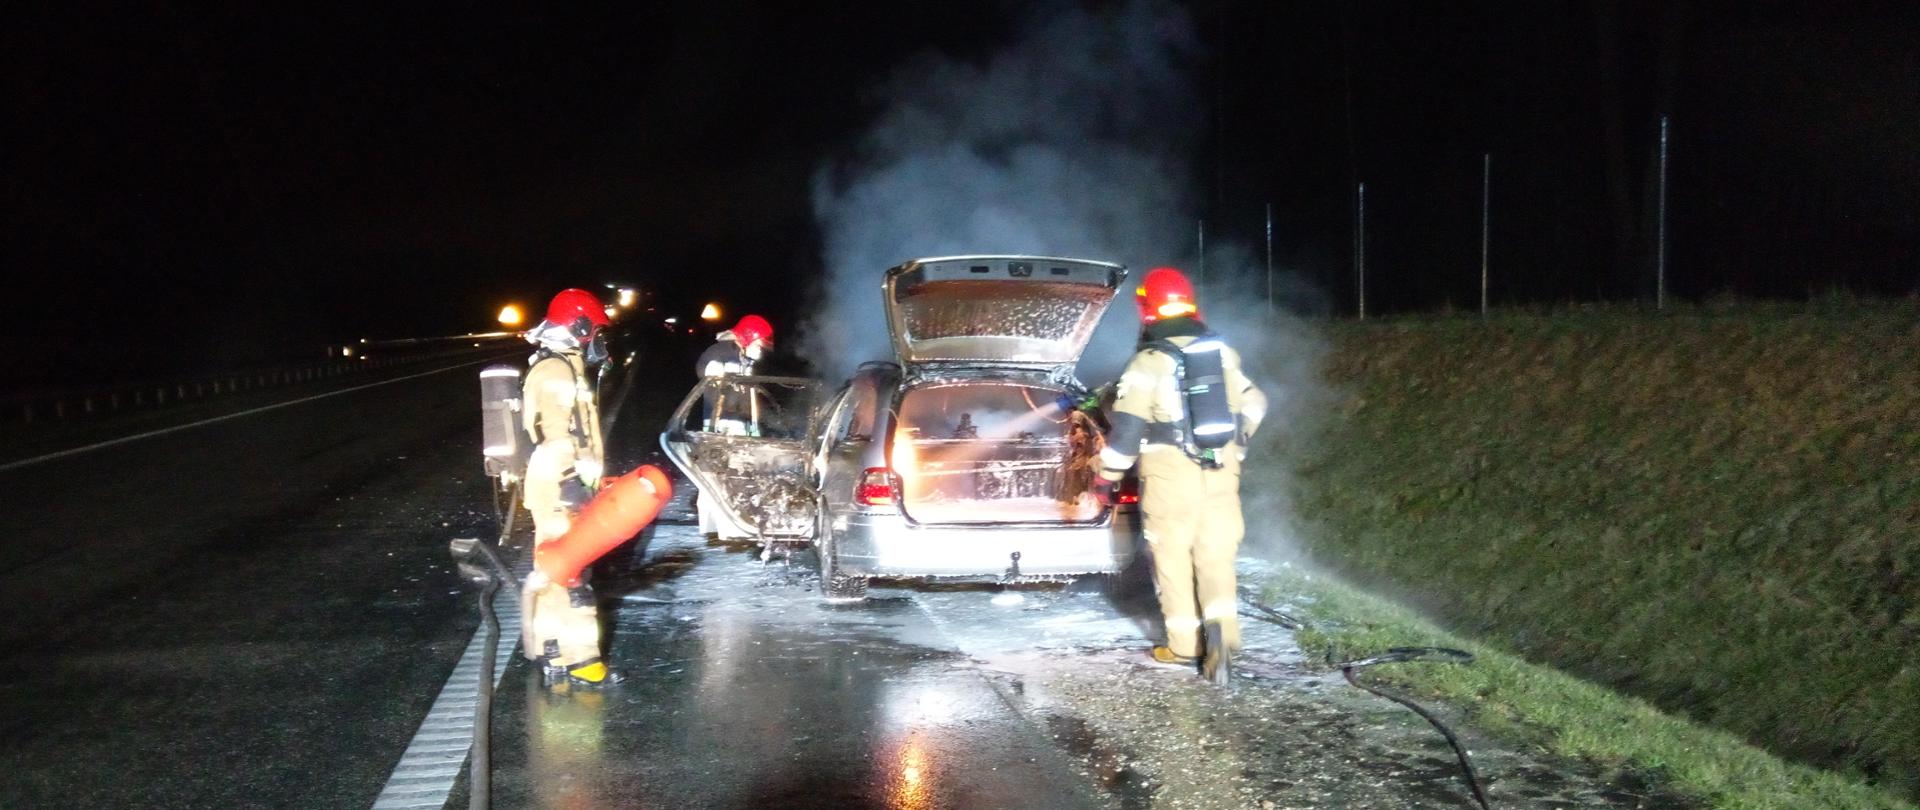 Zdjęcie przedstawia samochód mercedes z otwartą klapą bagażnika z którego wydobywa się biały dym. Obok samochodu znajdują się strażacy którzy gaszą pożar. Jest noc. Samochód znajduje się na poboczu drogi.